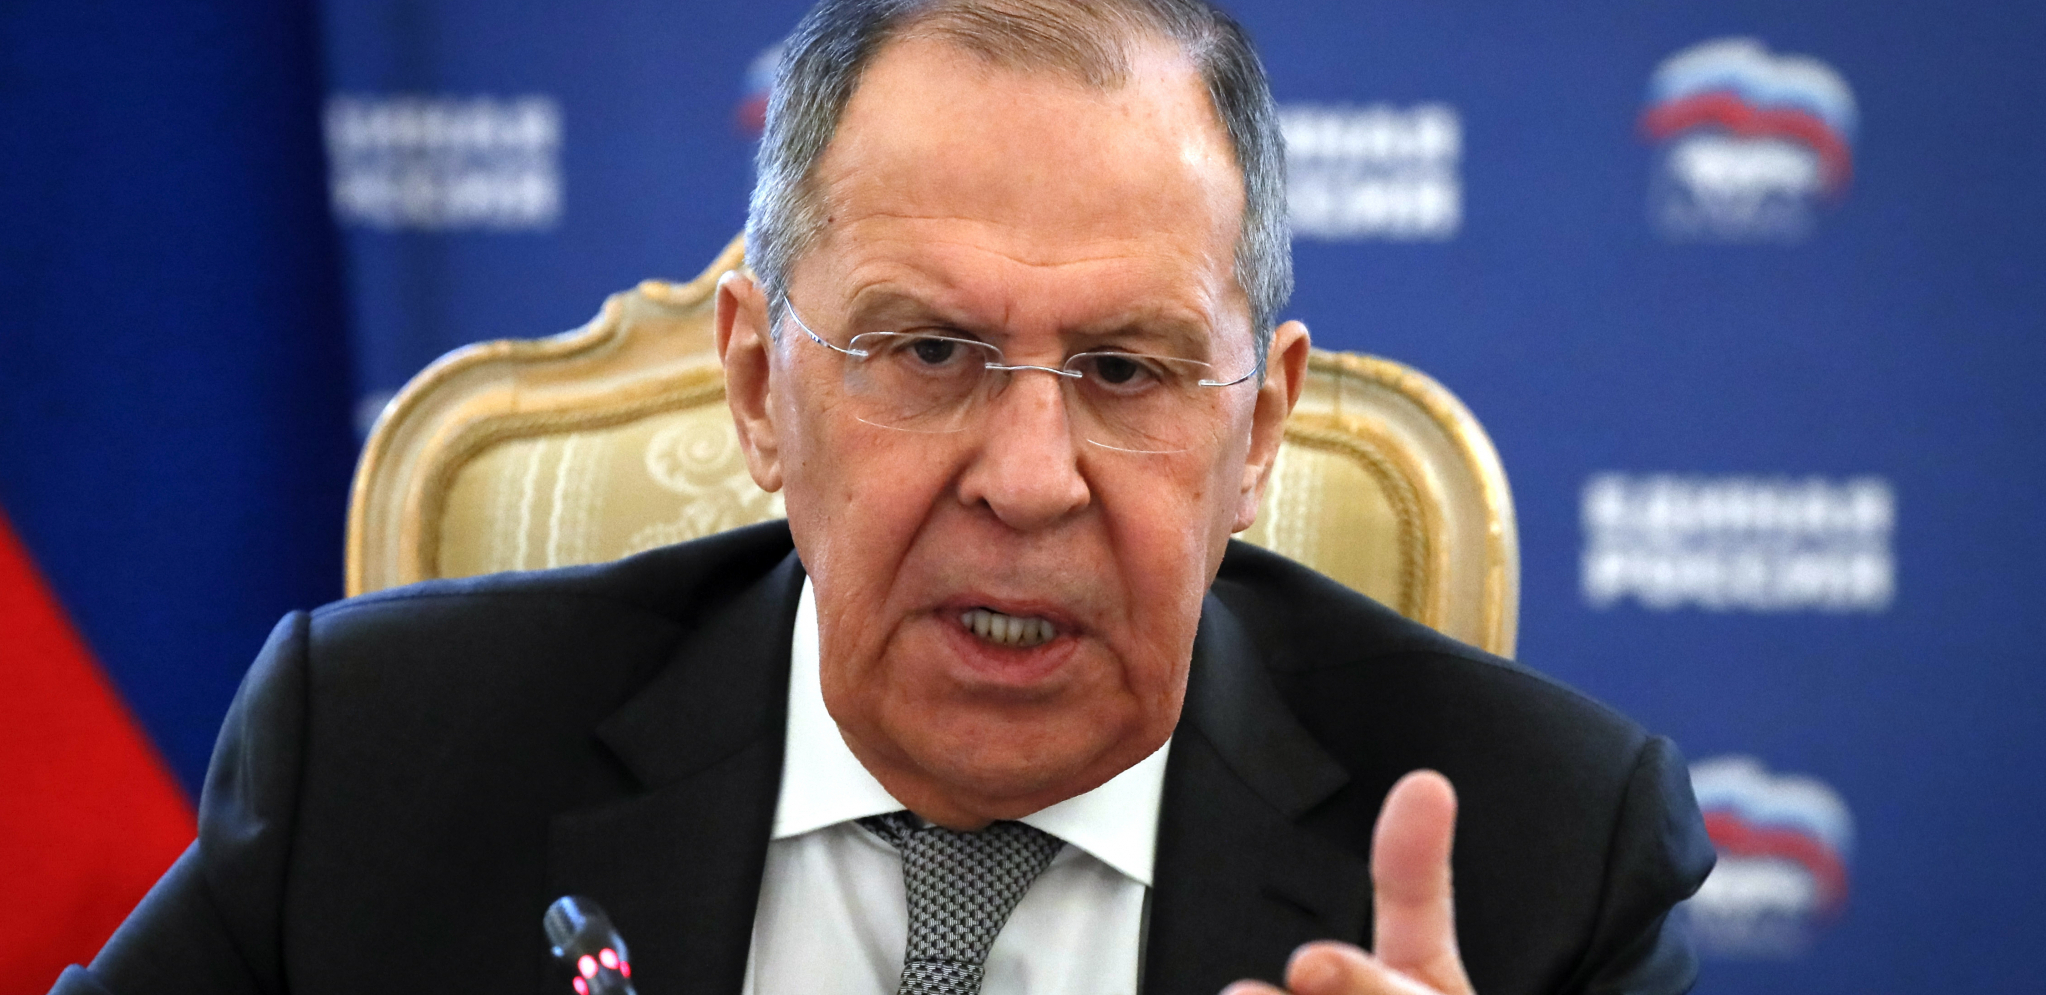 ZAPAD JE GRUB I DRZAK Lavrov upozorava da su druge zemlje primorane da se pridružuju antiruskim sankcijama